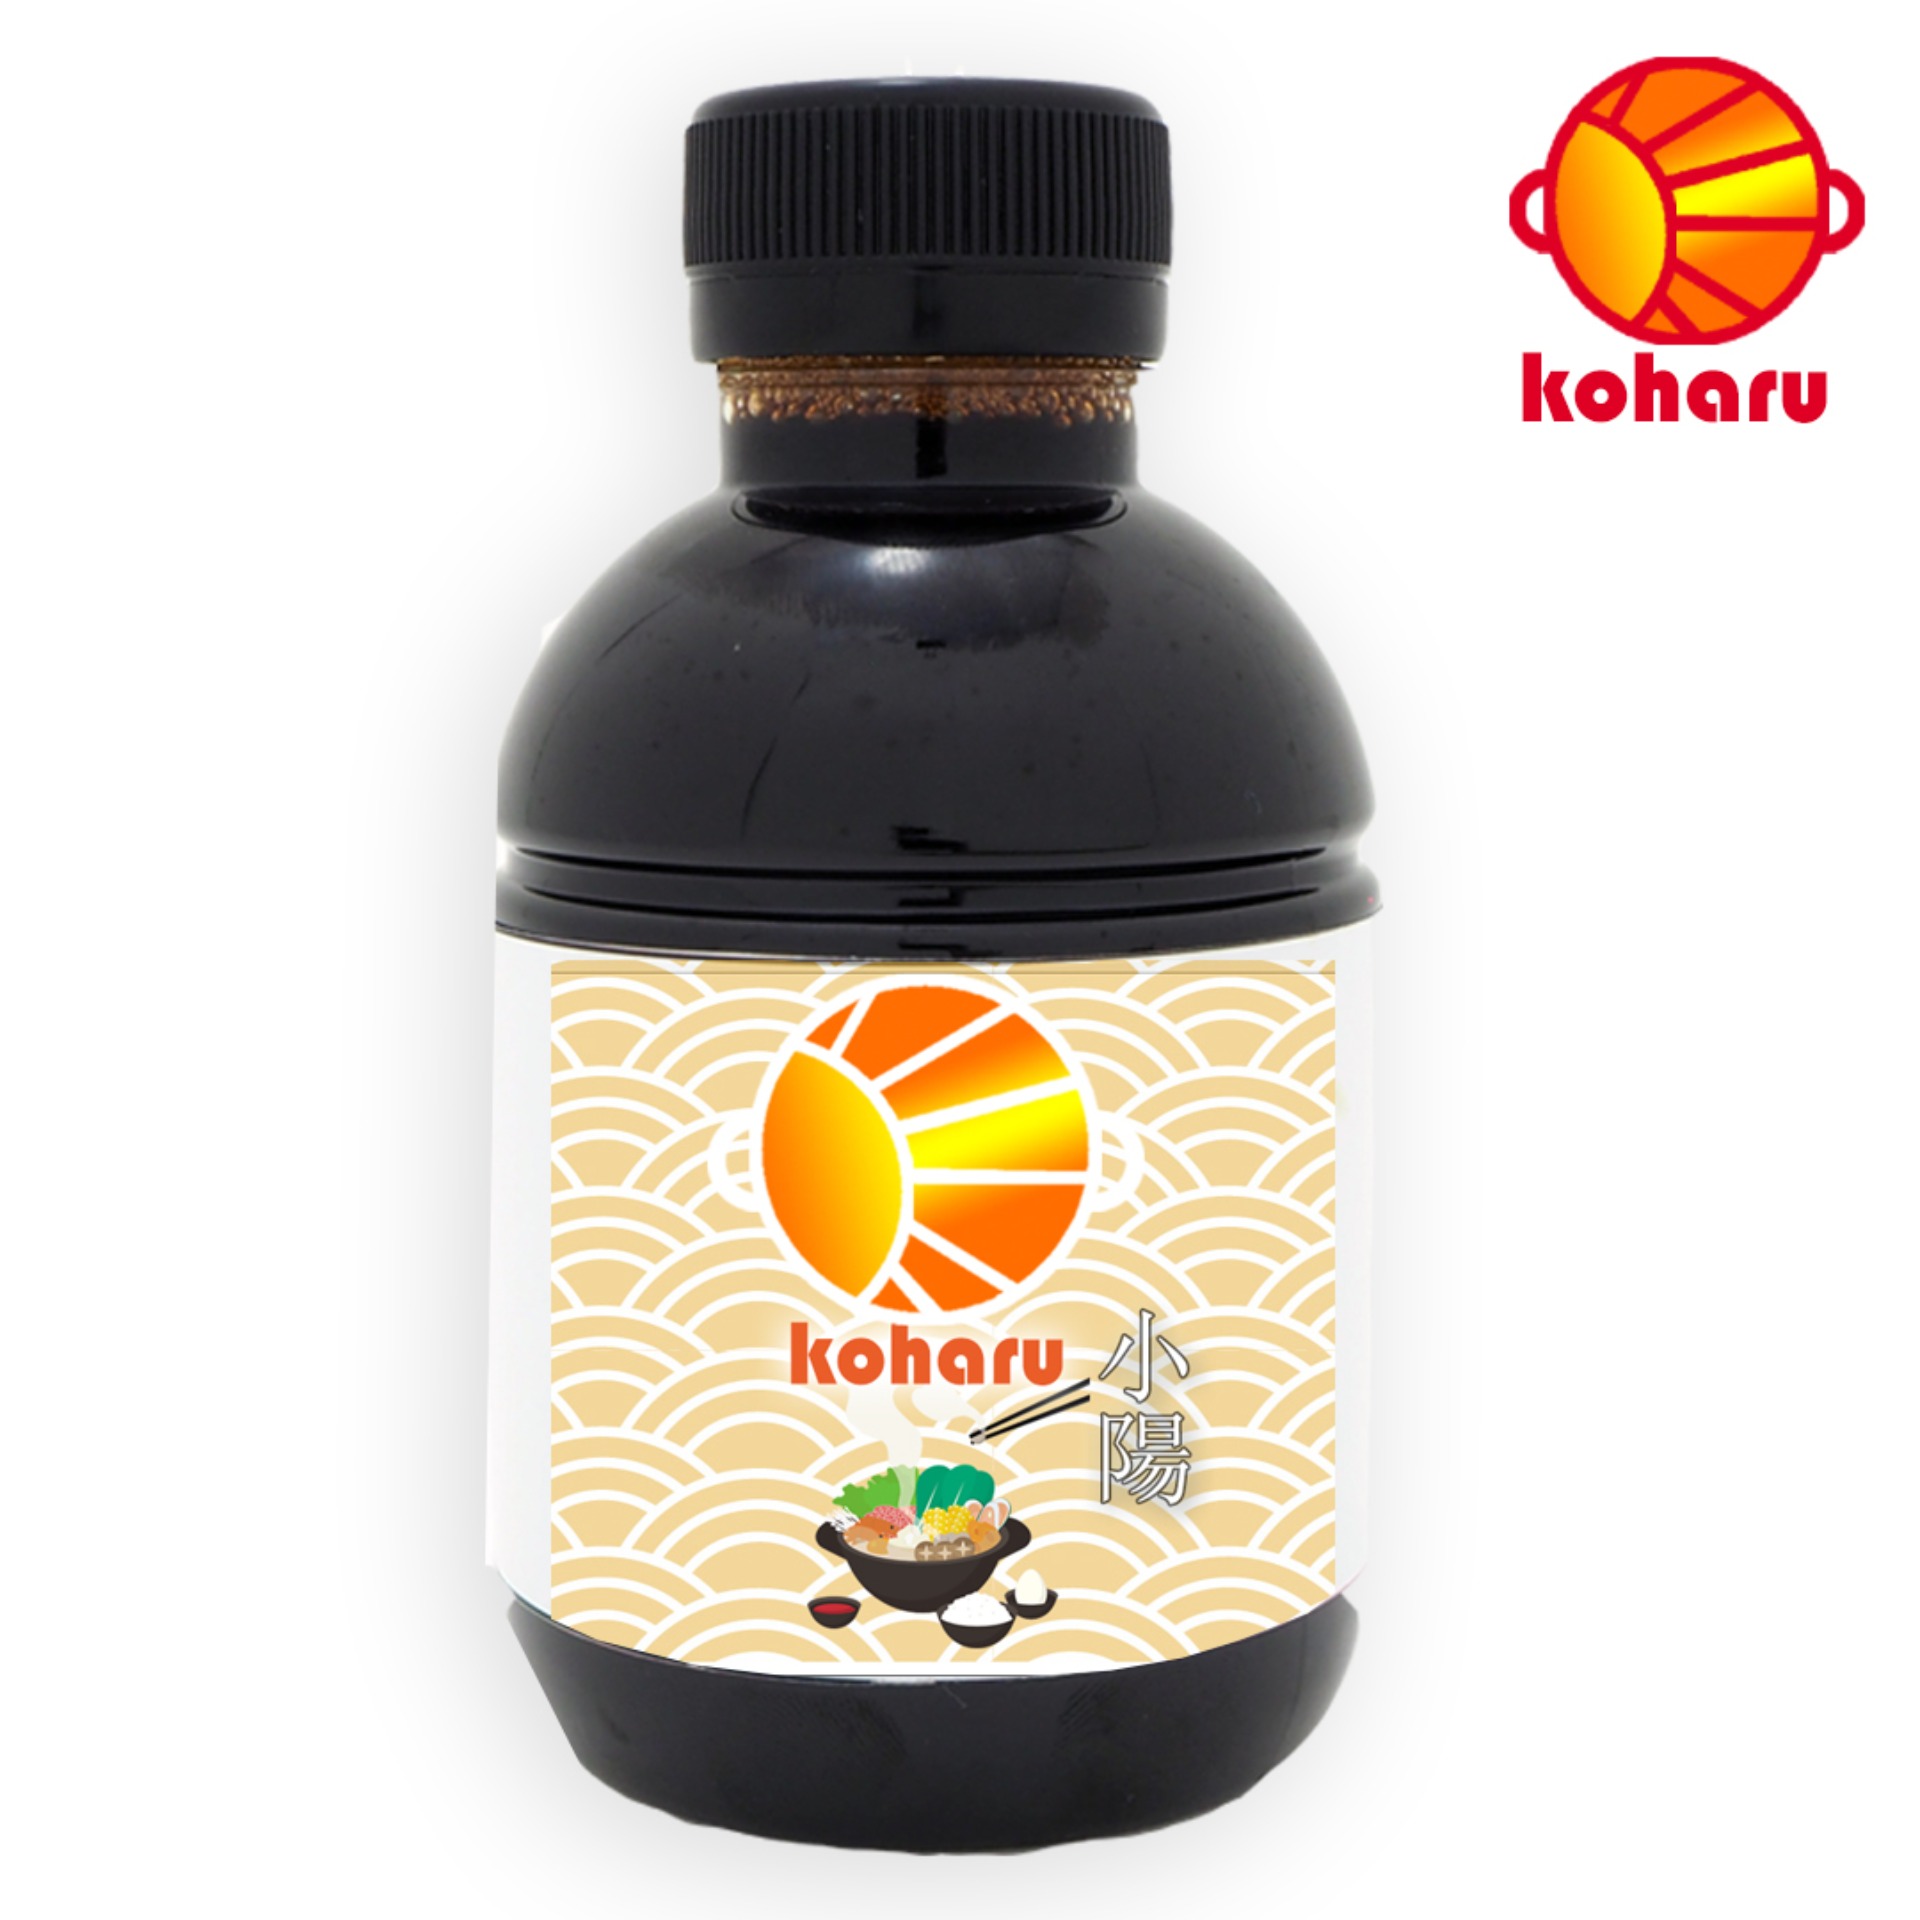 Koharu Sukiyaki น้ำซุปชาบูน้ำดำสำเร็จรูป Homemade ระดับพรีเมี่ยม (220 ml.)